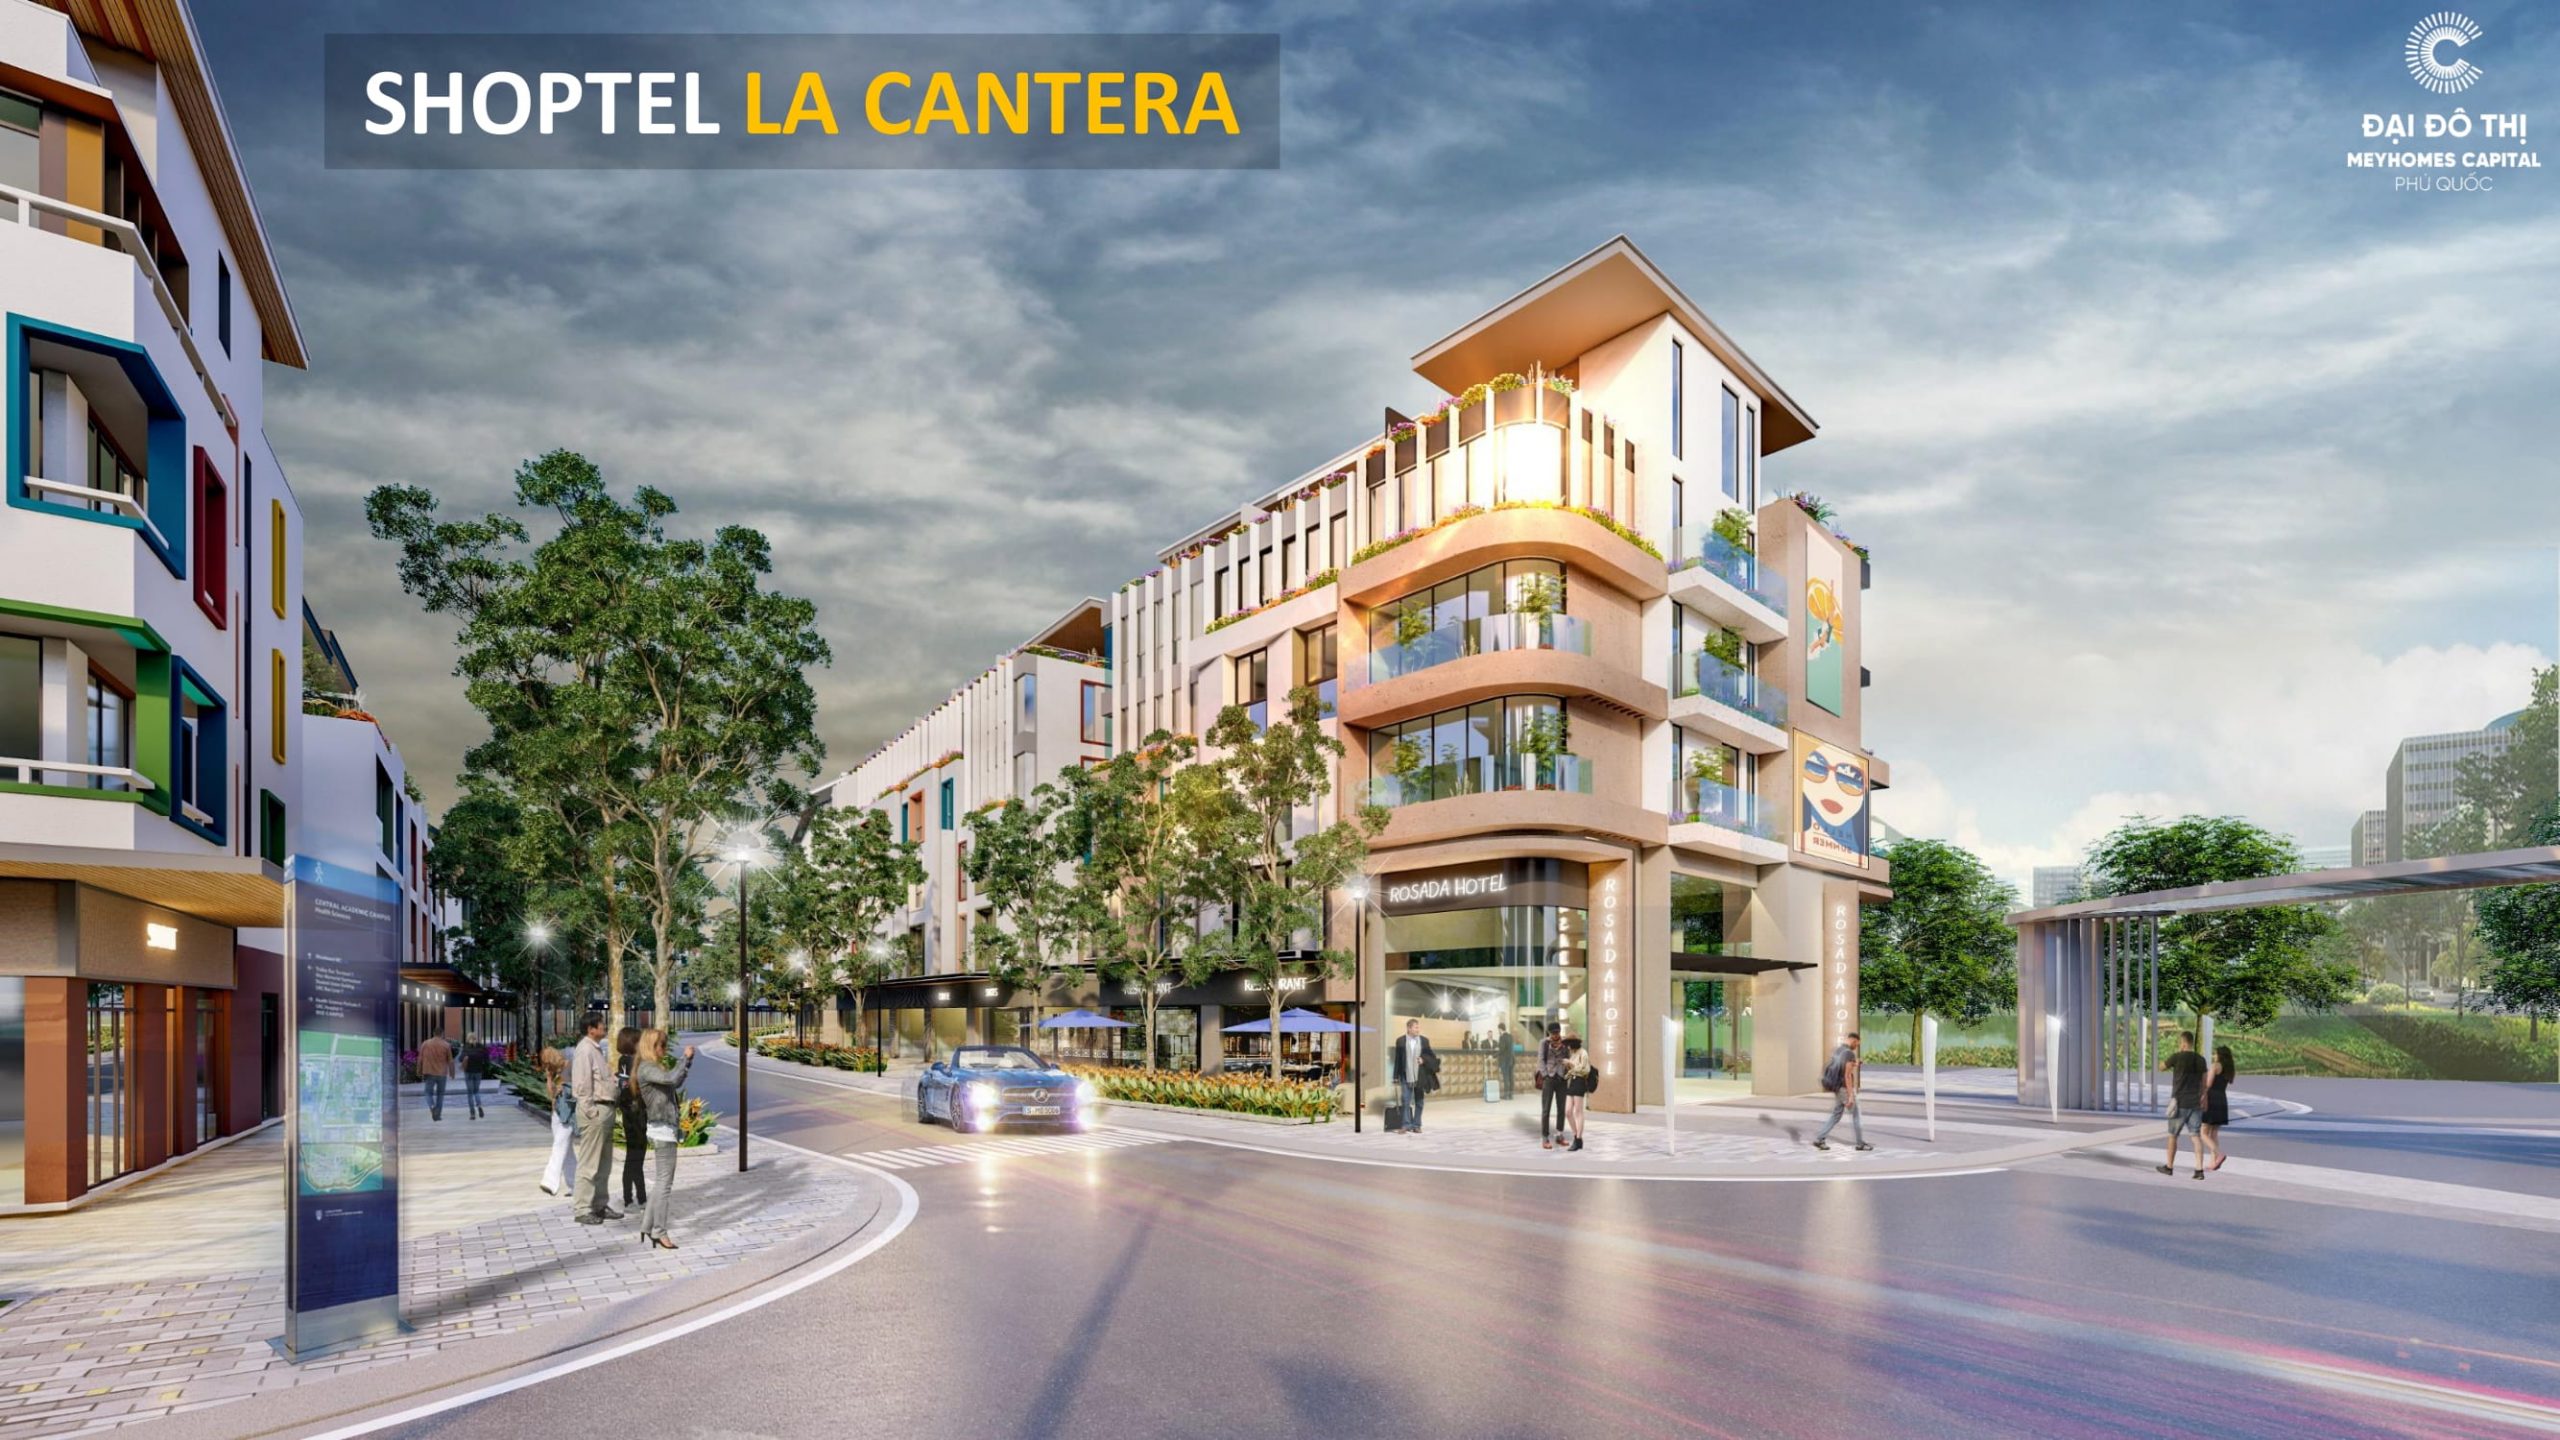 Điểm tham quan hấp dẫn tại “con phố không bao giờ ngủ” Shoptel La Cantera